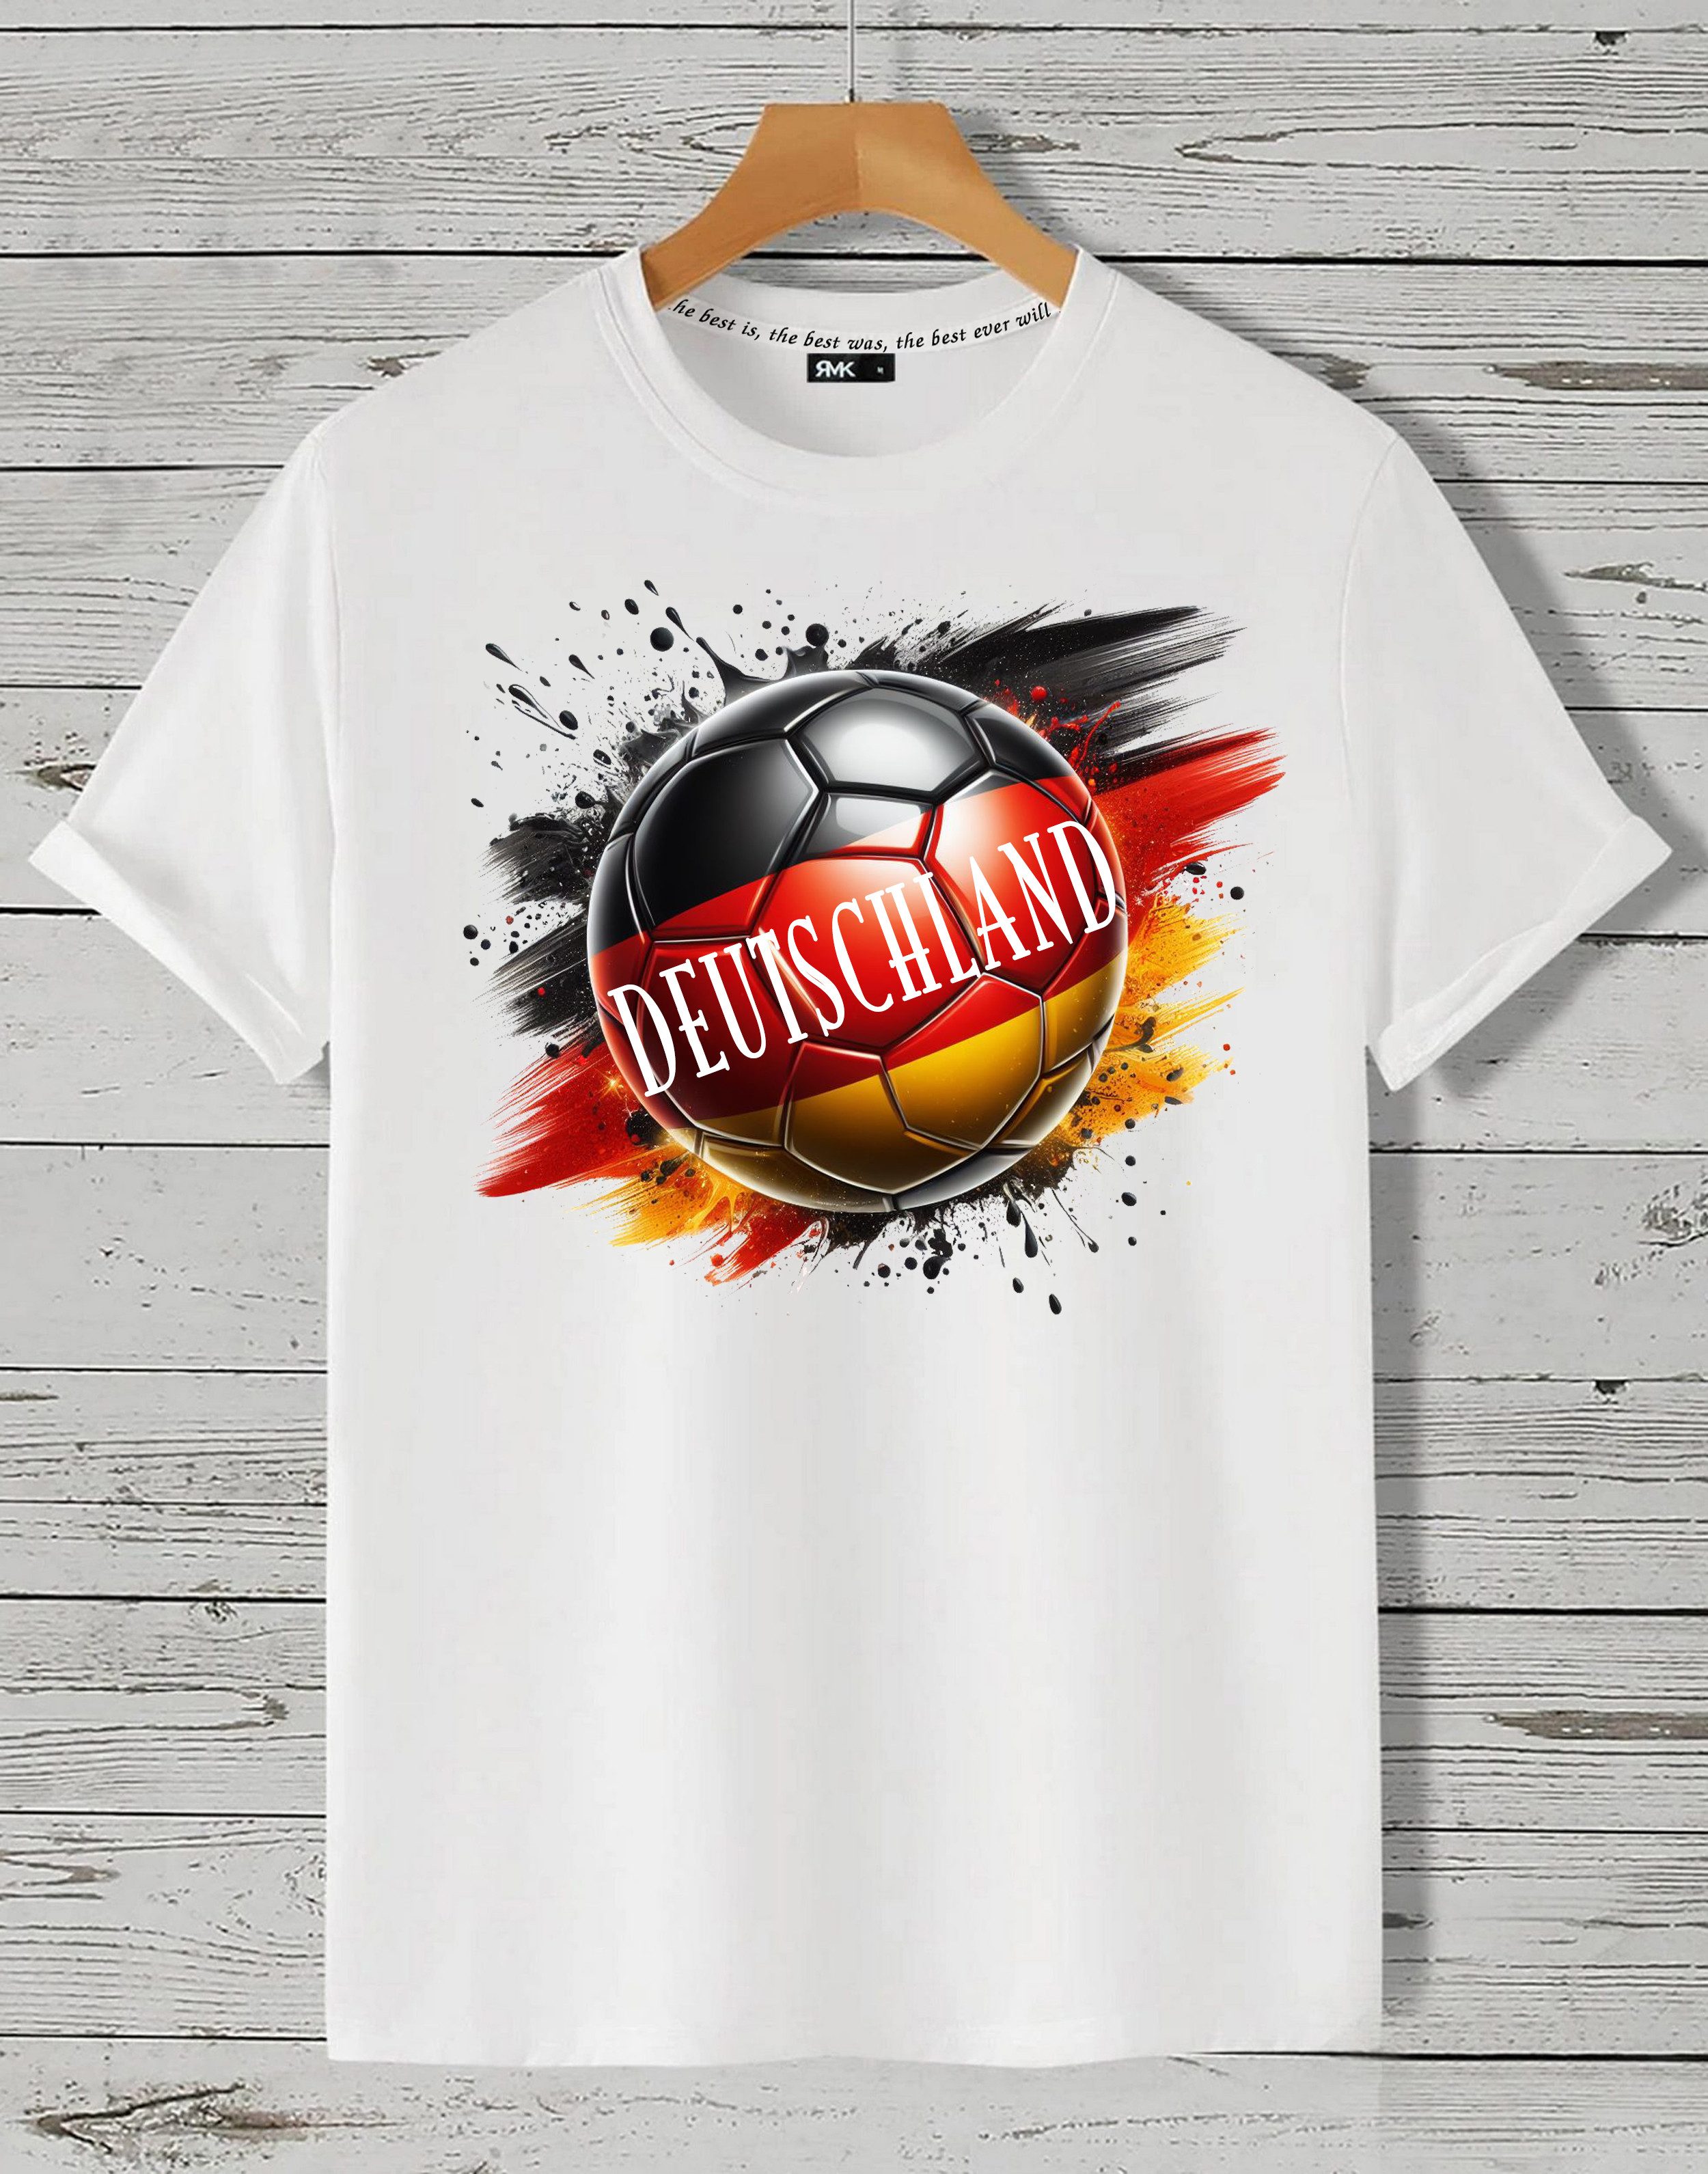 RMK T-Shirt Herren Shirt Trikot Fan Fußball Deutschland Germany EM WM aus Baumwolle